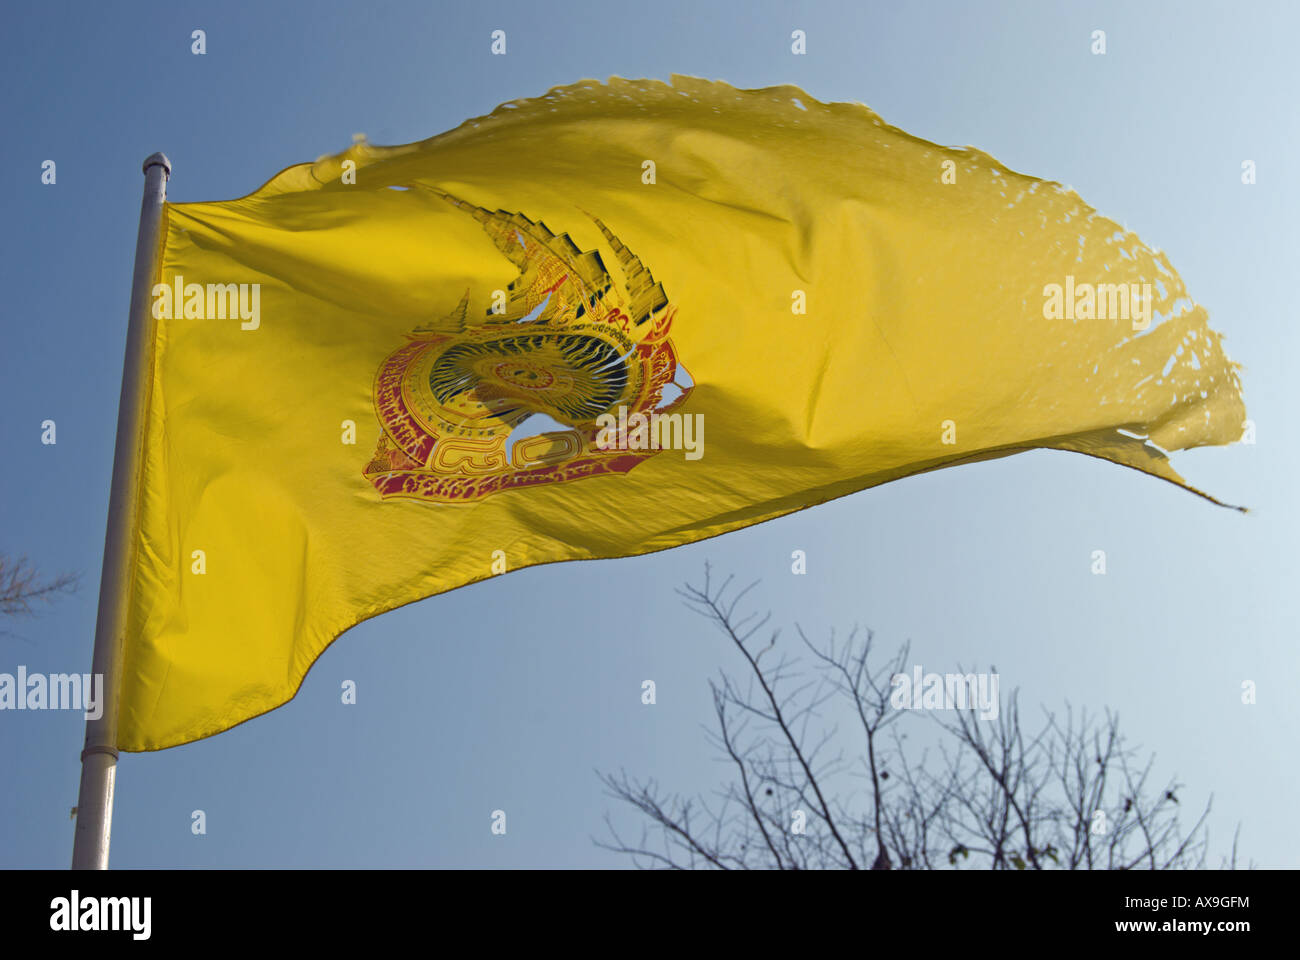 auf dem Gelände des Tempels, die gelbe Flagge des thailändischen  Buddhismus, Dharma-Rad-Flagge, Wellen in einer Brise Stockfotografie - Alamy